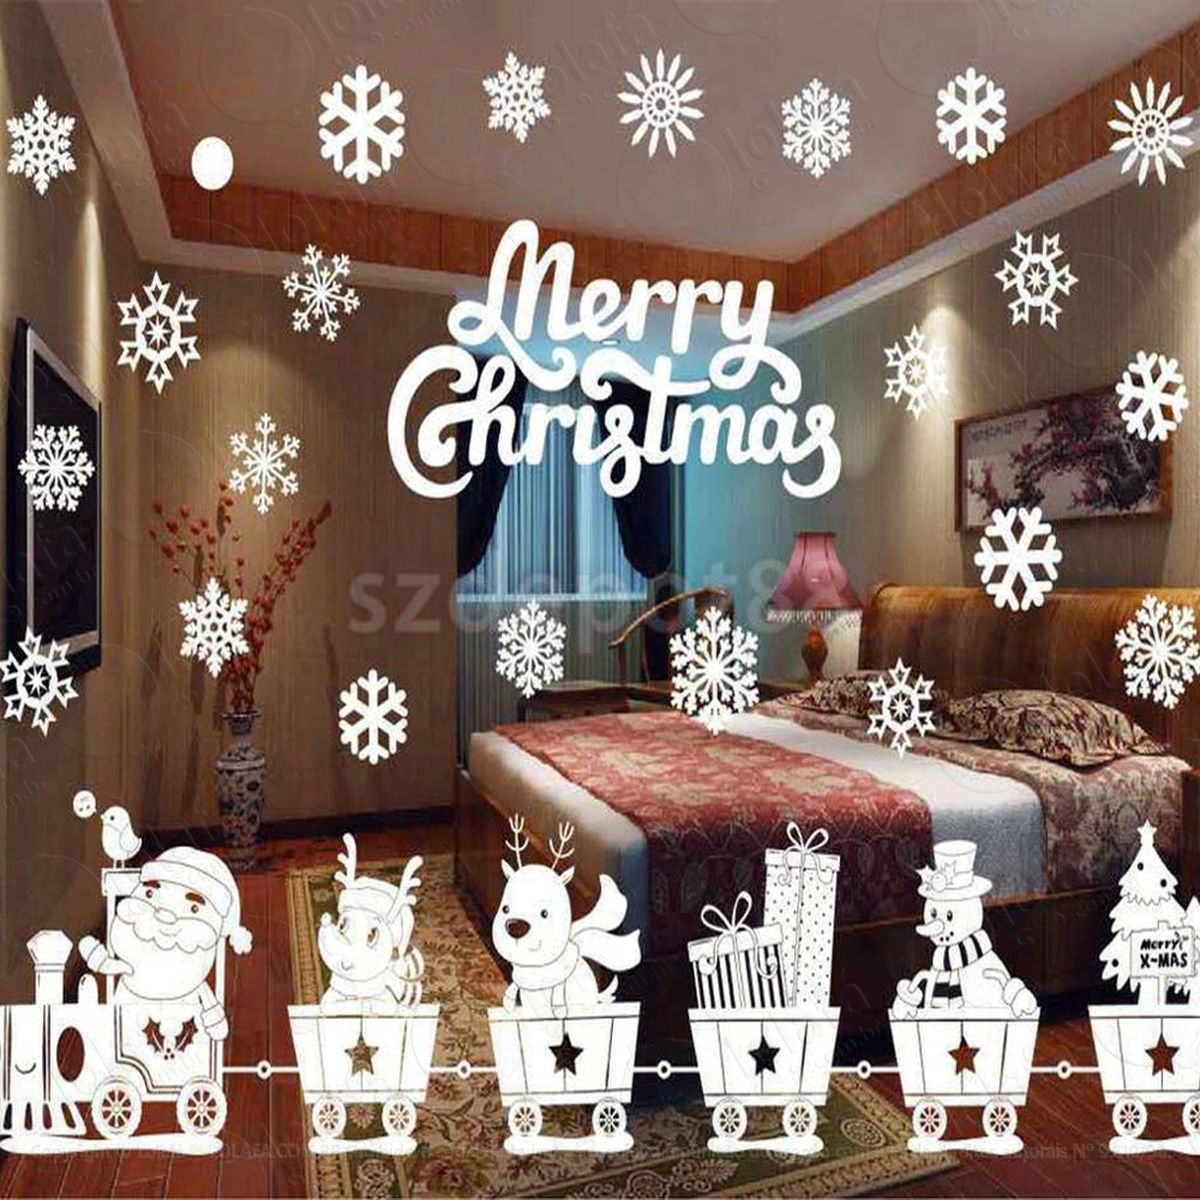 trenzinho adesivo de natal para vitrine, parede, porta de vidro - decoração natalina mod:255